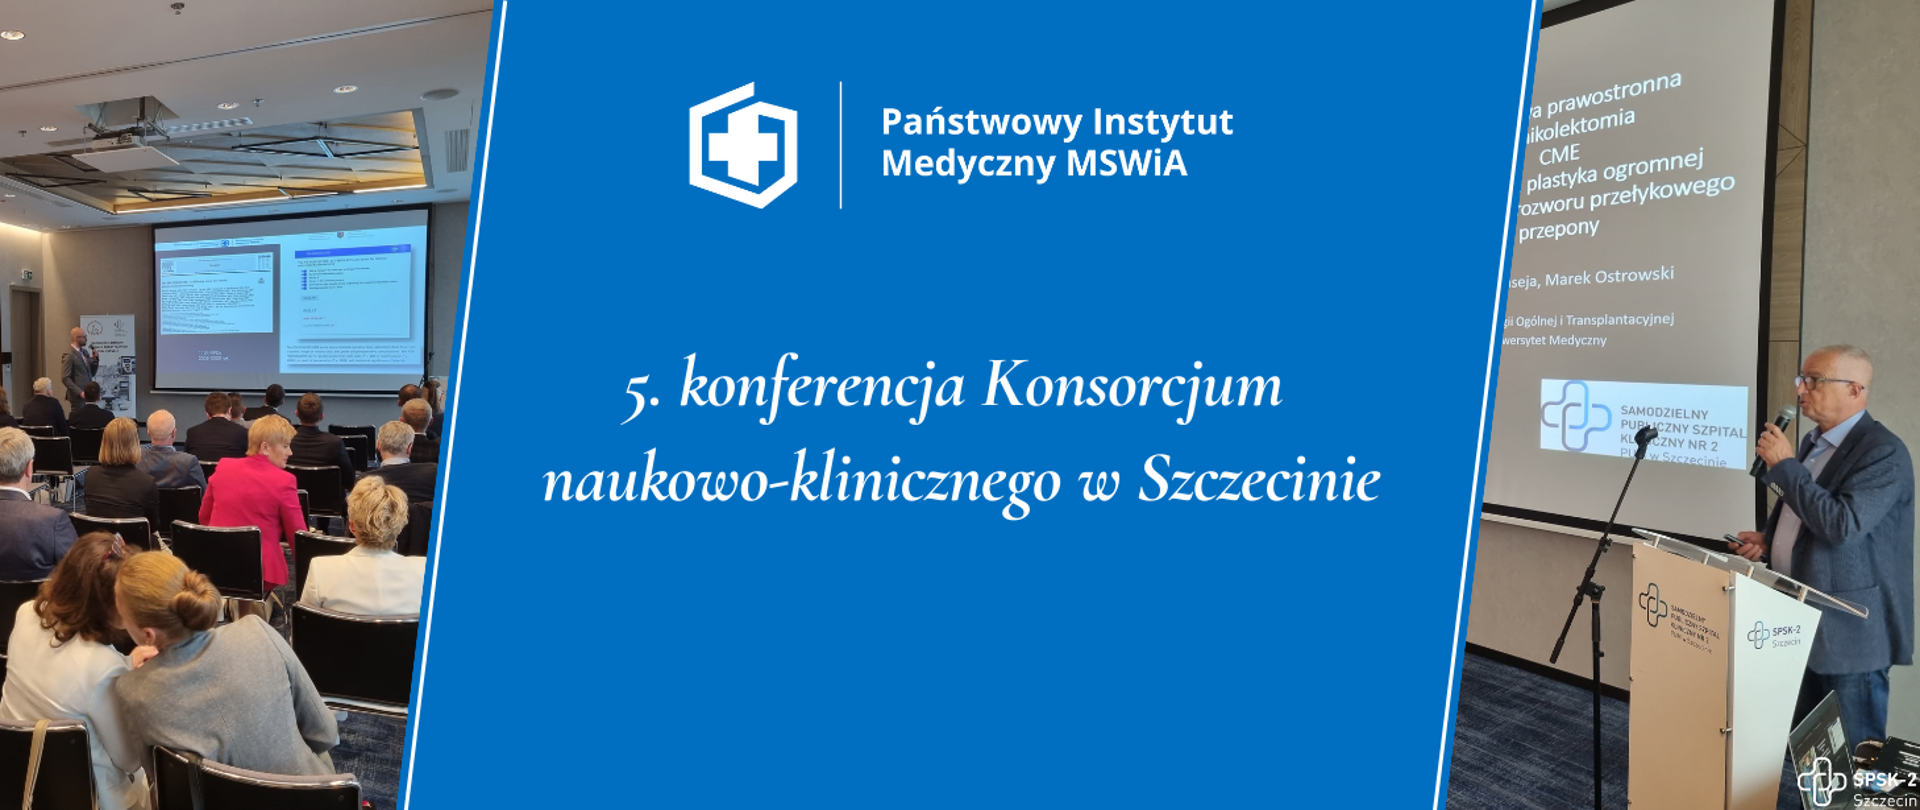 
5. konferencja Konsorcjum naukowo - klinicznego w Szczecinie